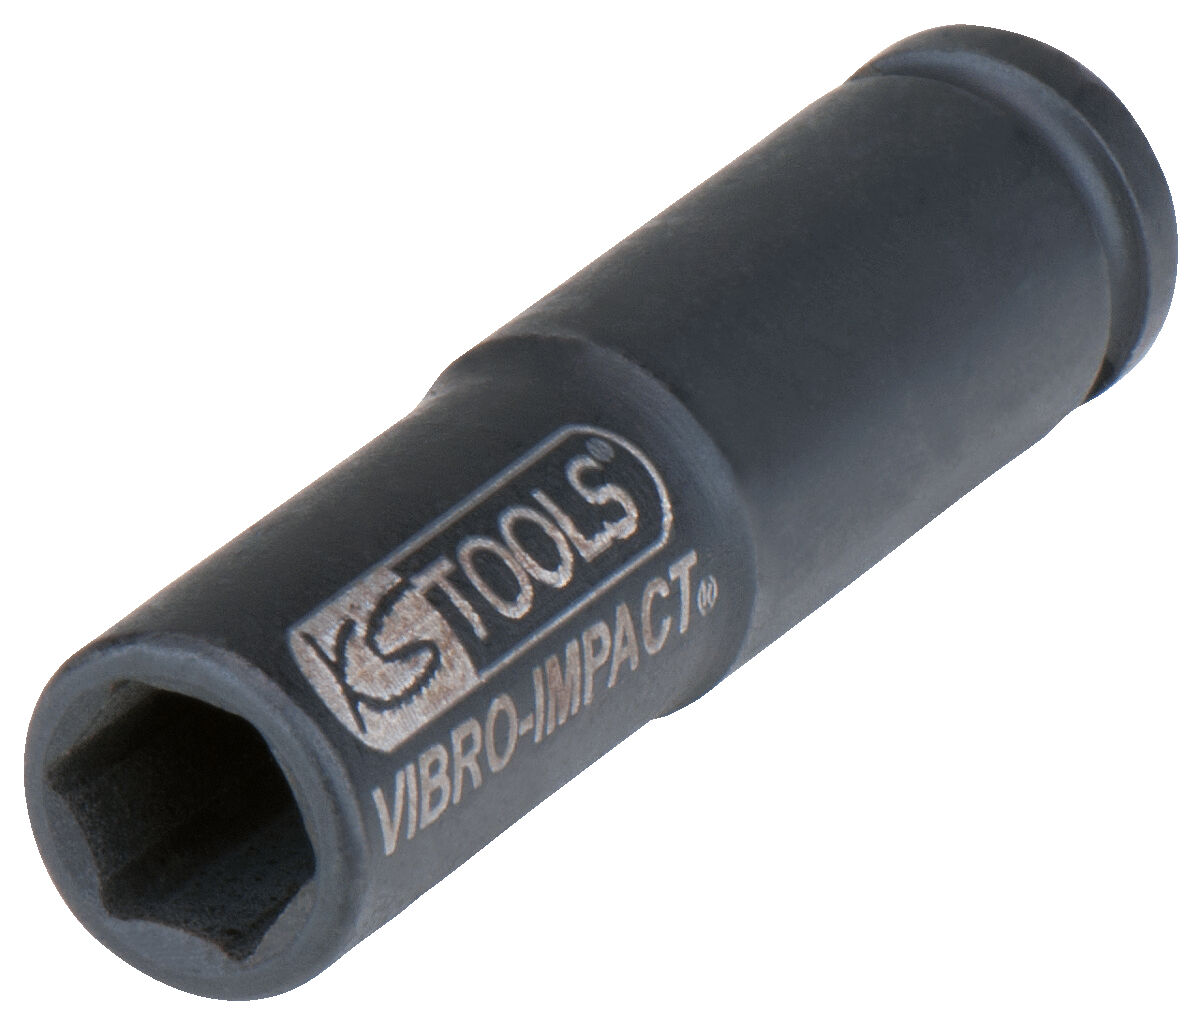 KS Tools - Douille spéciale pour bougies de préchauffage, 10 mm